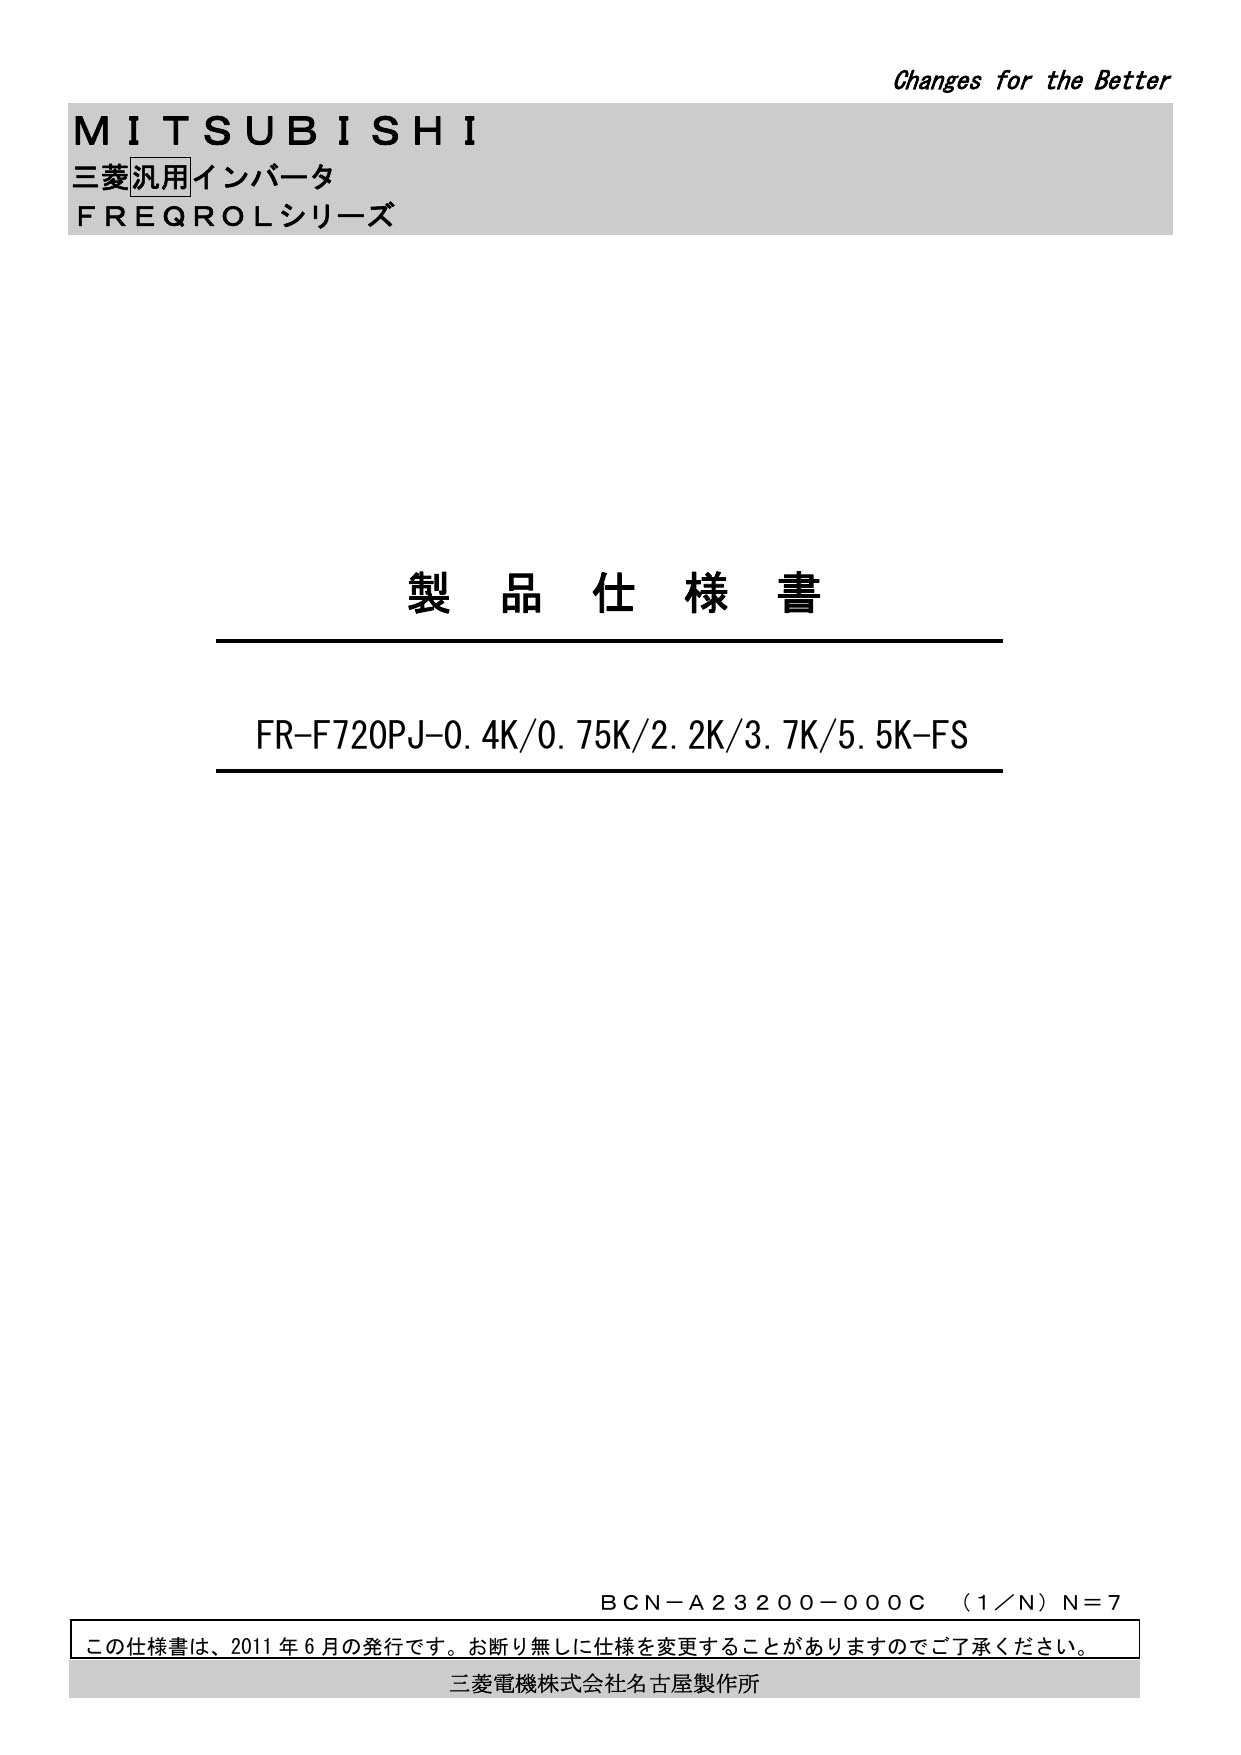 登場! 三菱 FR-F720PJ-3.7K-FS ファンインバーター3相200V